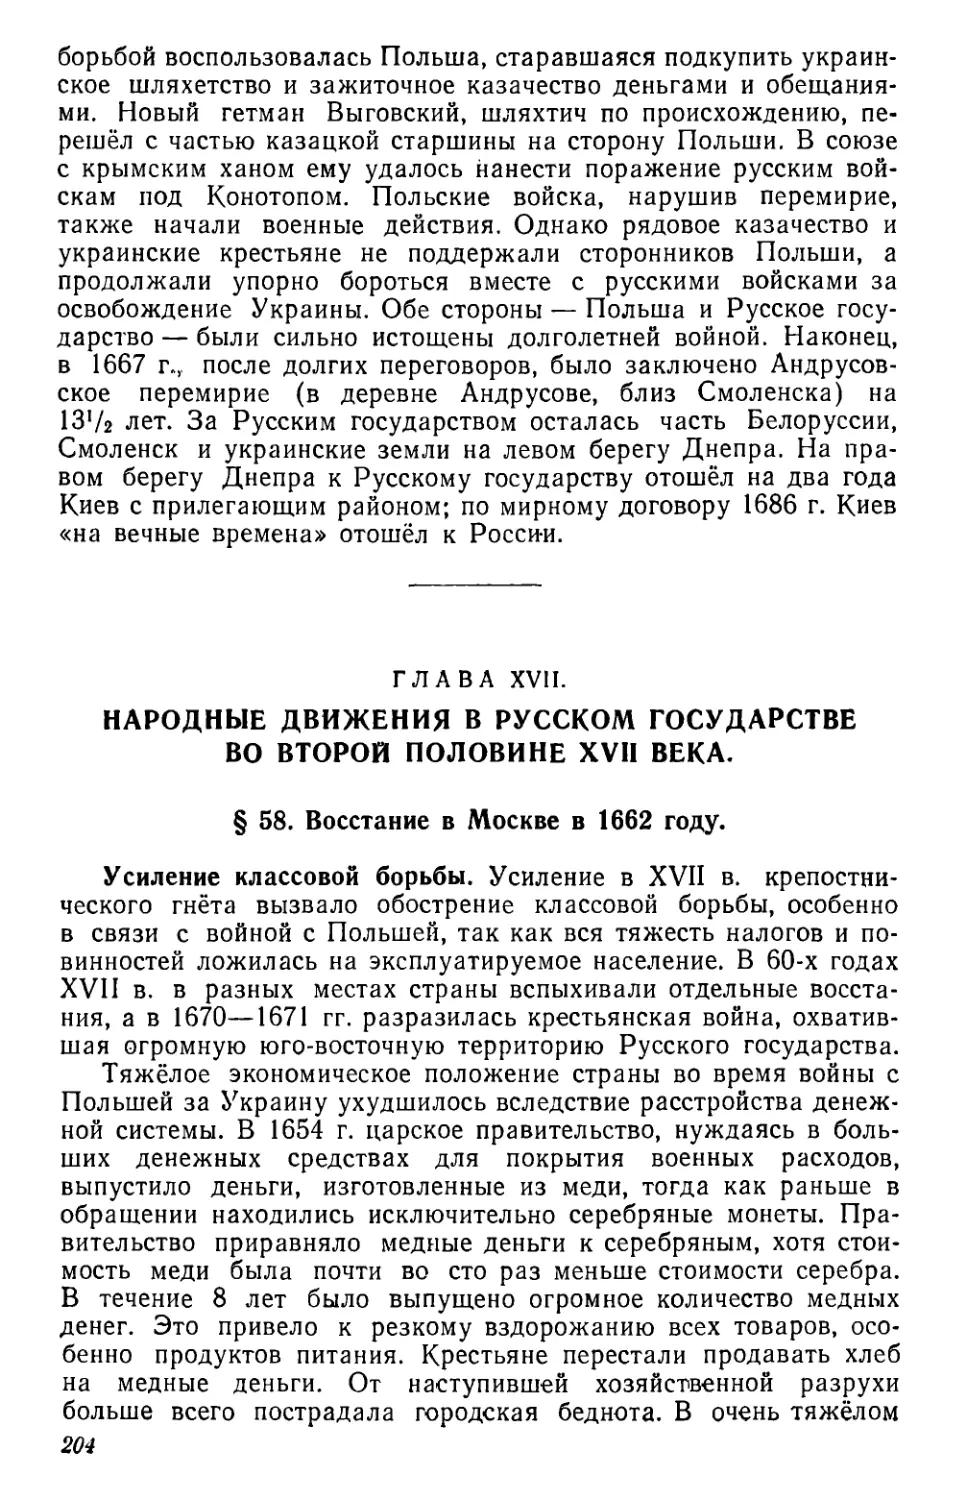 Глава XVII. Народные движения в Русском государстве во второй половине XVII века